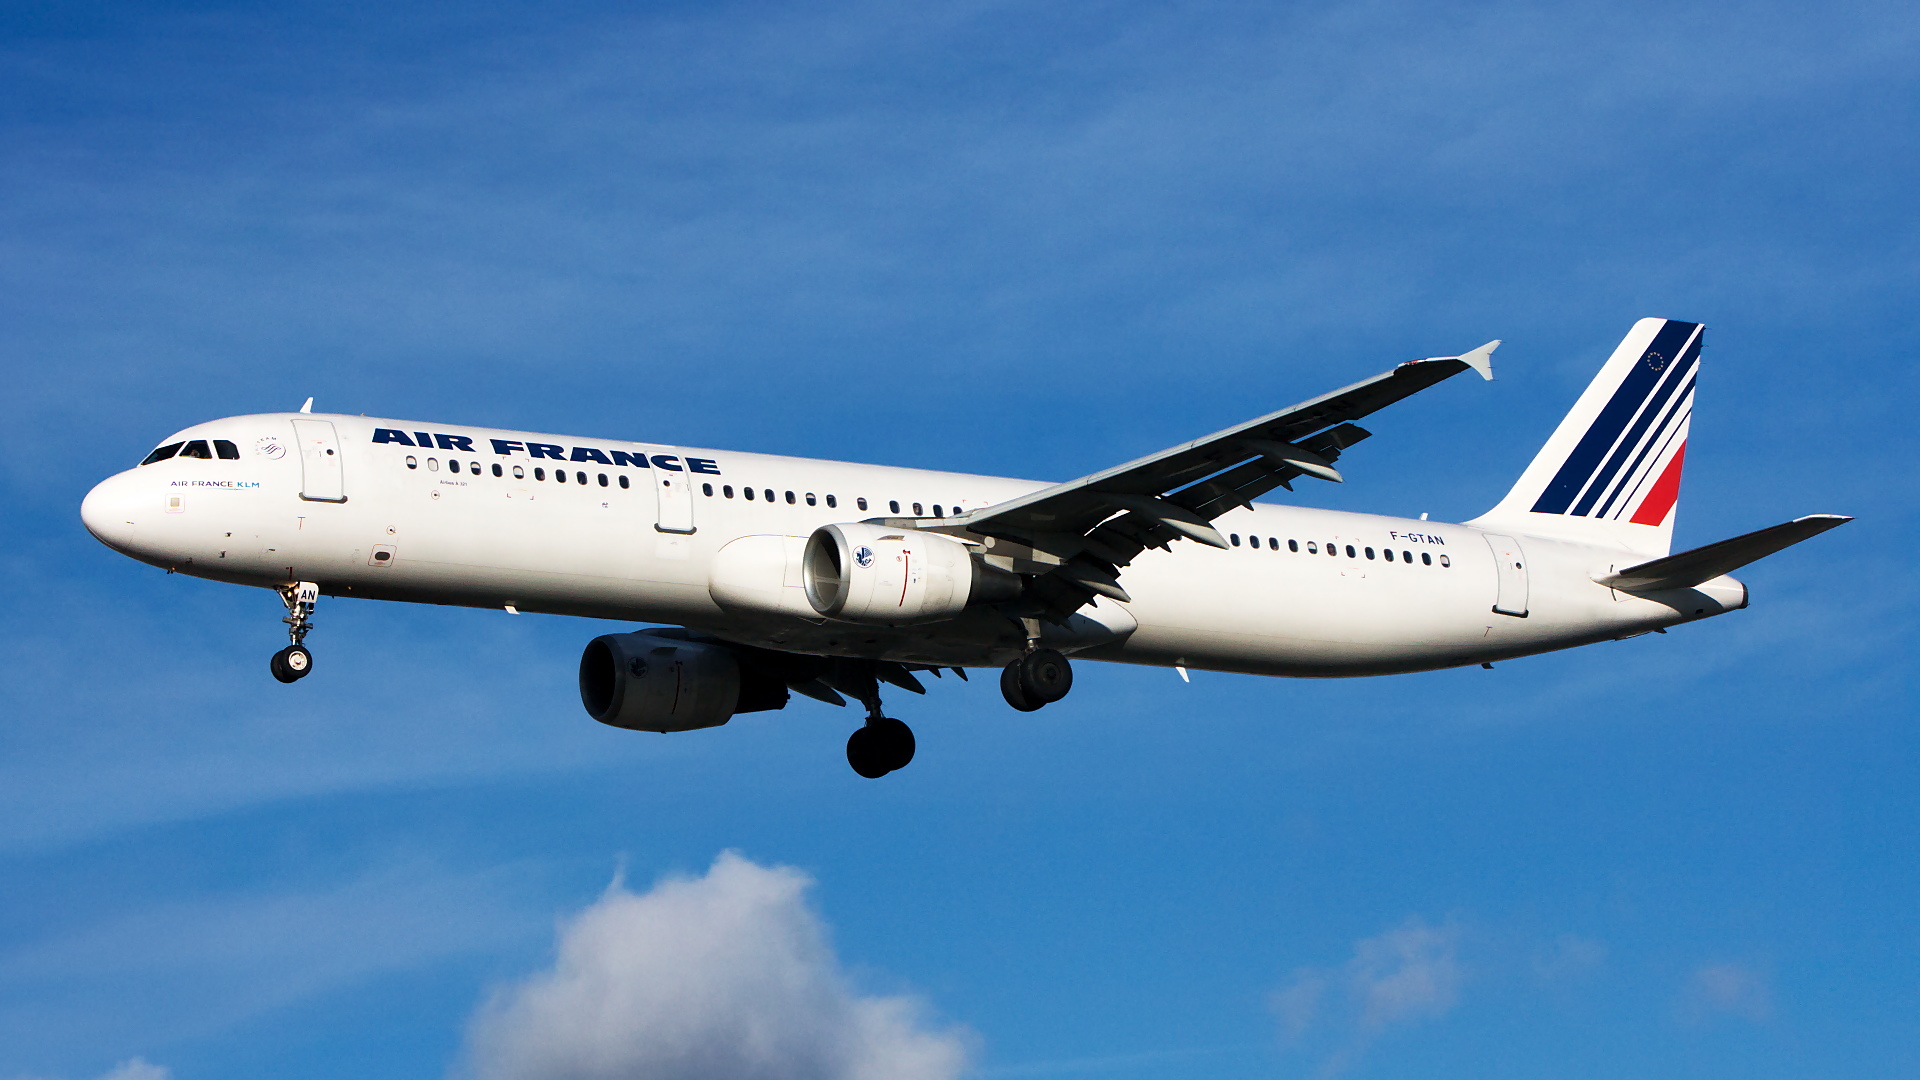 F-GTAN ✈ Air France Airbus A321-211 @ London-Heathrow